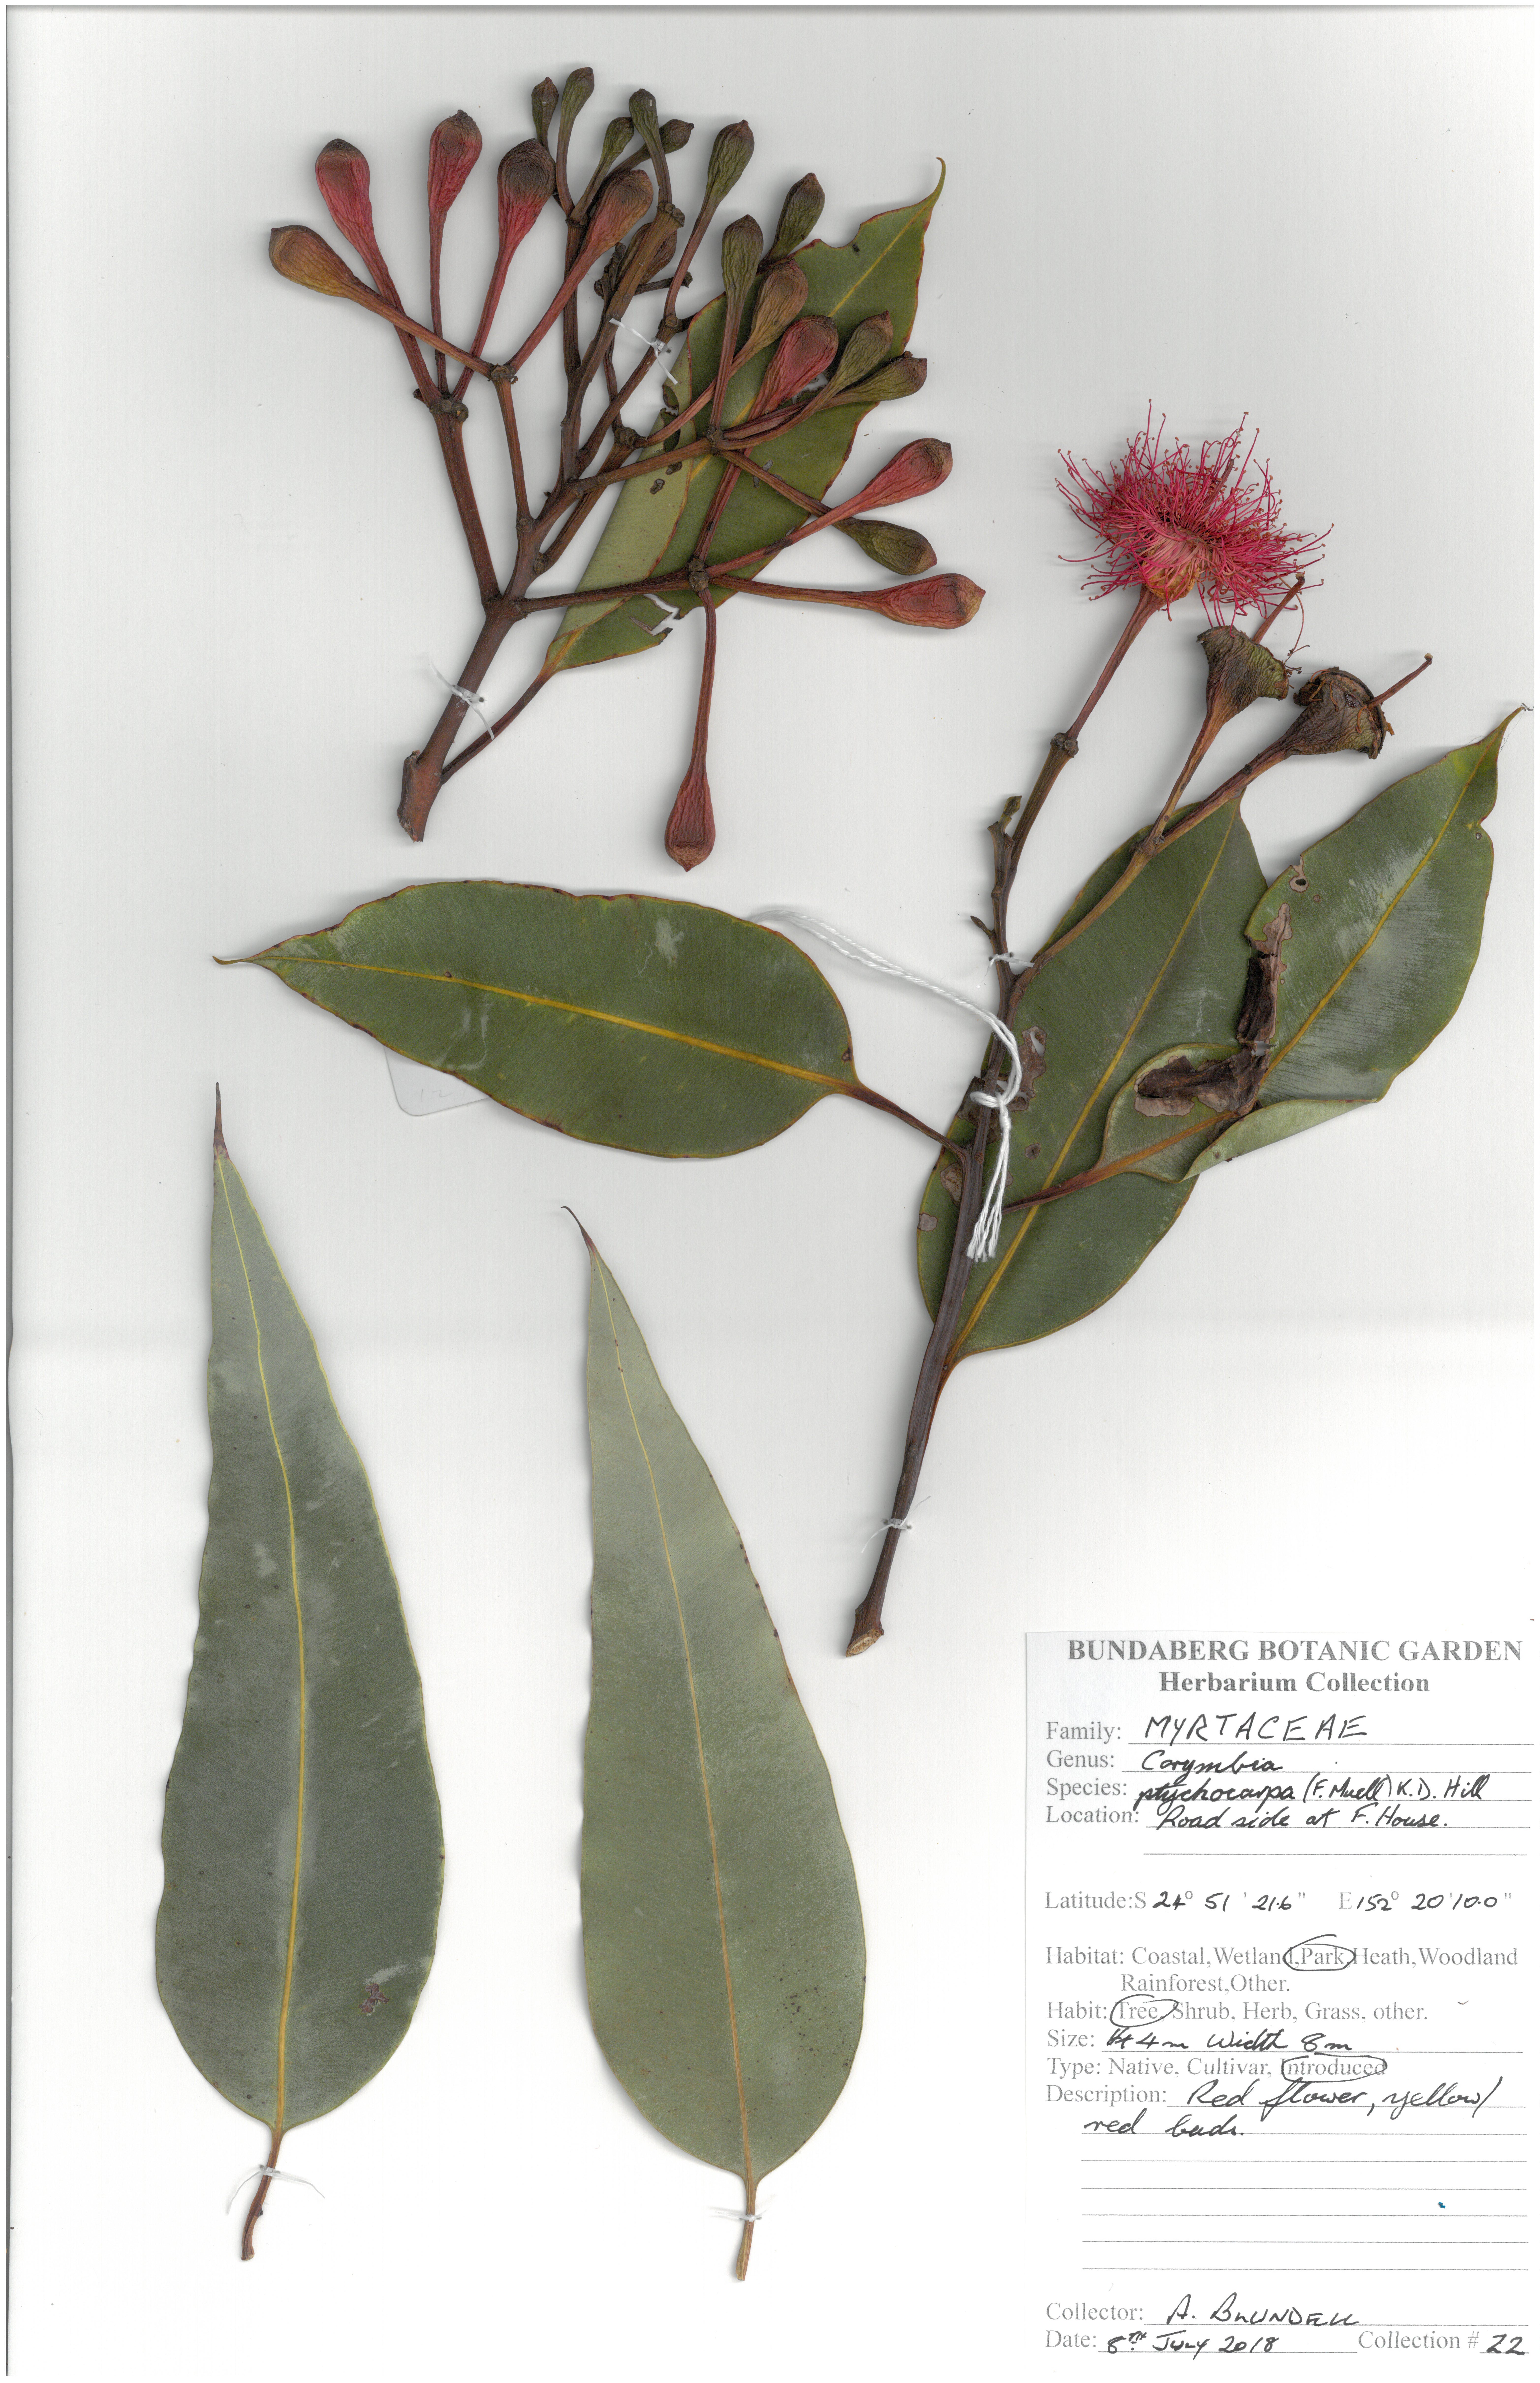 Myrtaceae corymbia ptychocarpa